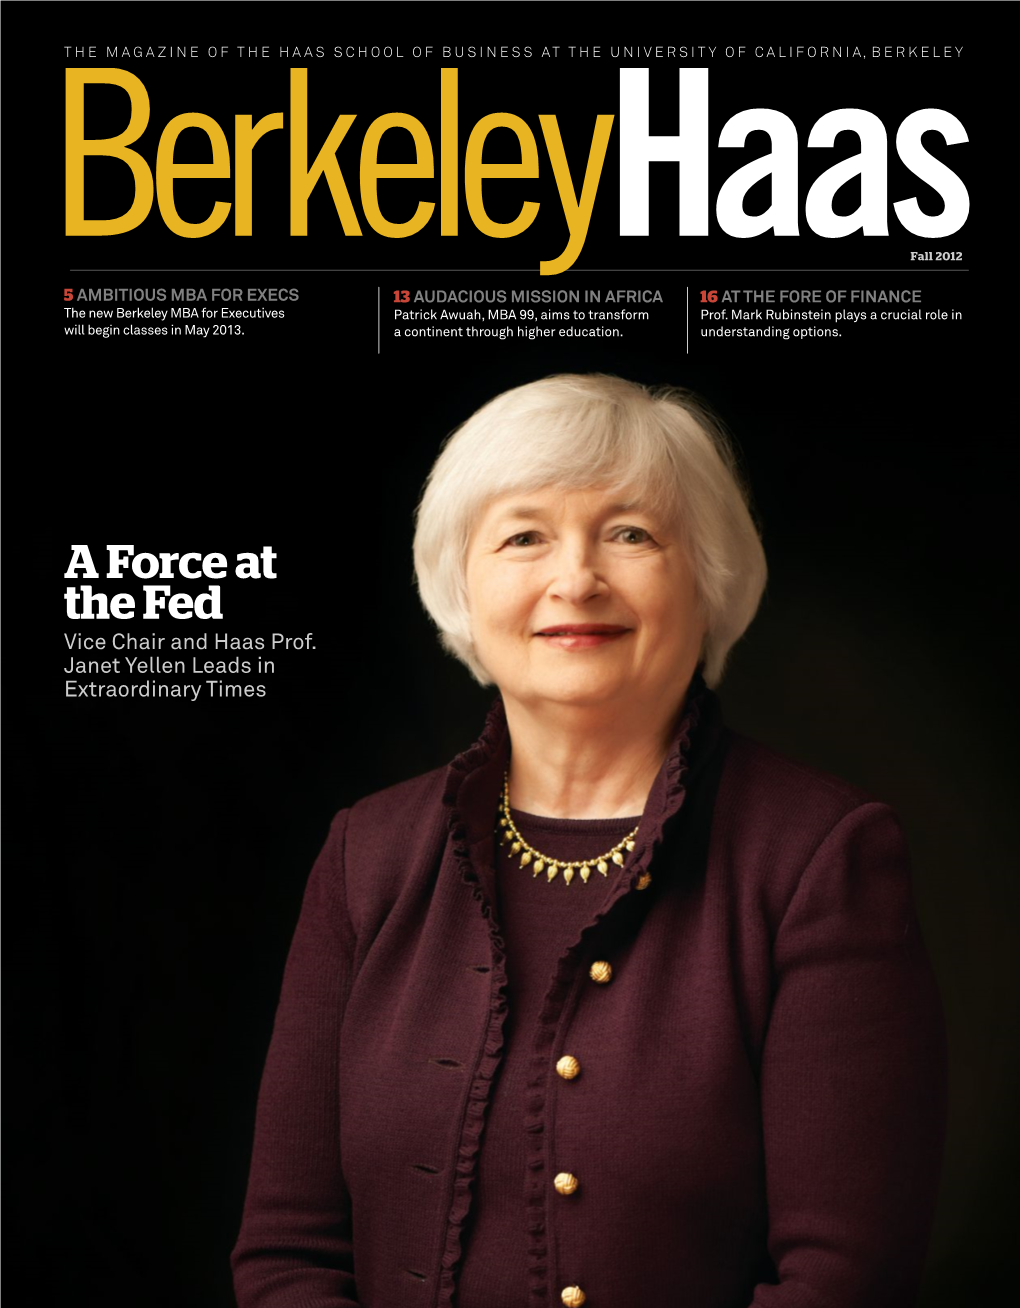 Berkeleyhaas Magazine Article on Janet Yellen